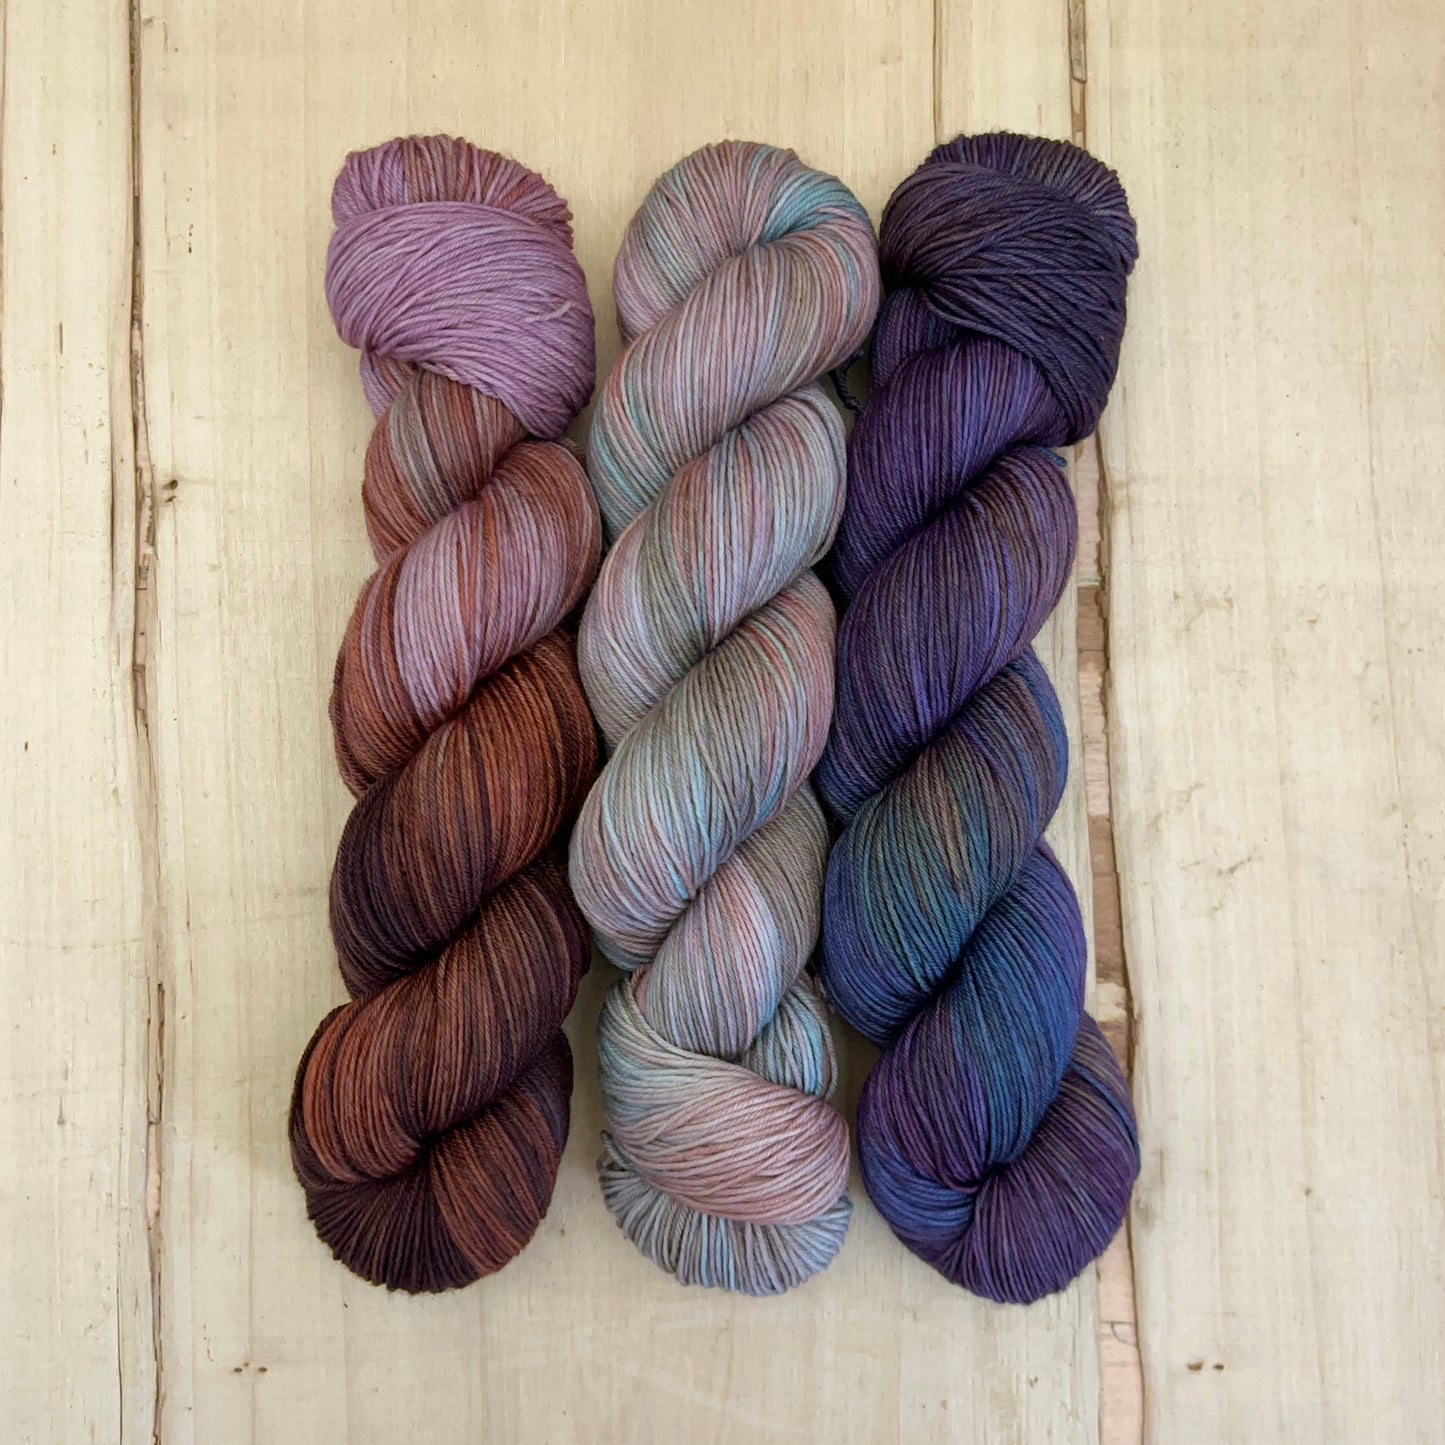 westknits - fiber fest shawl - pightle fingering/4ply - yarn pack #1